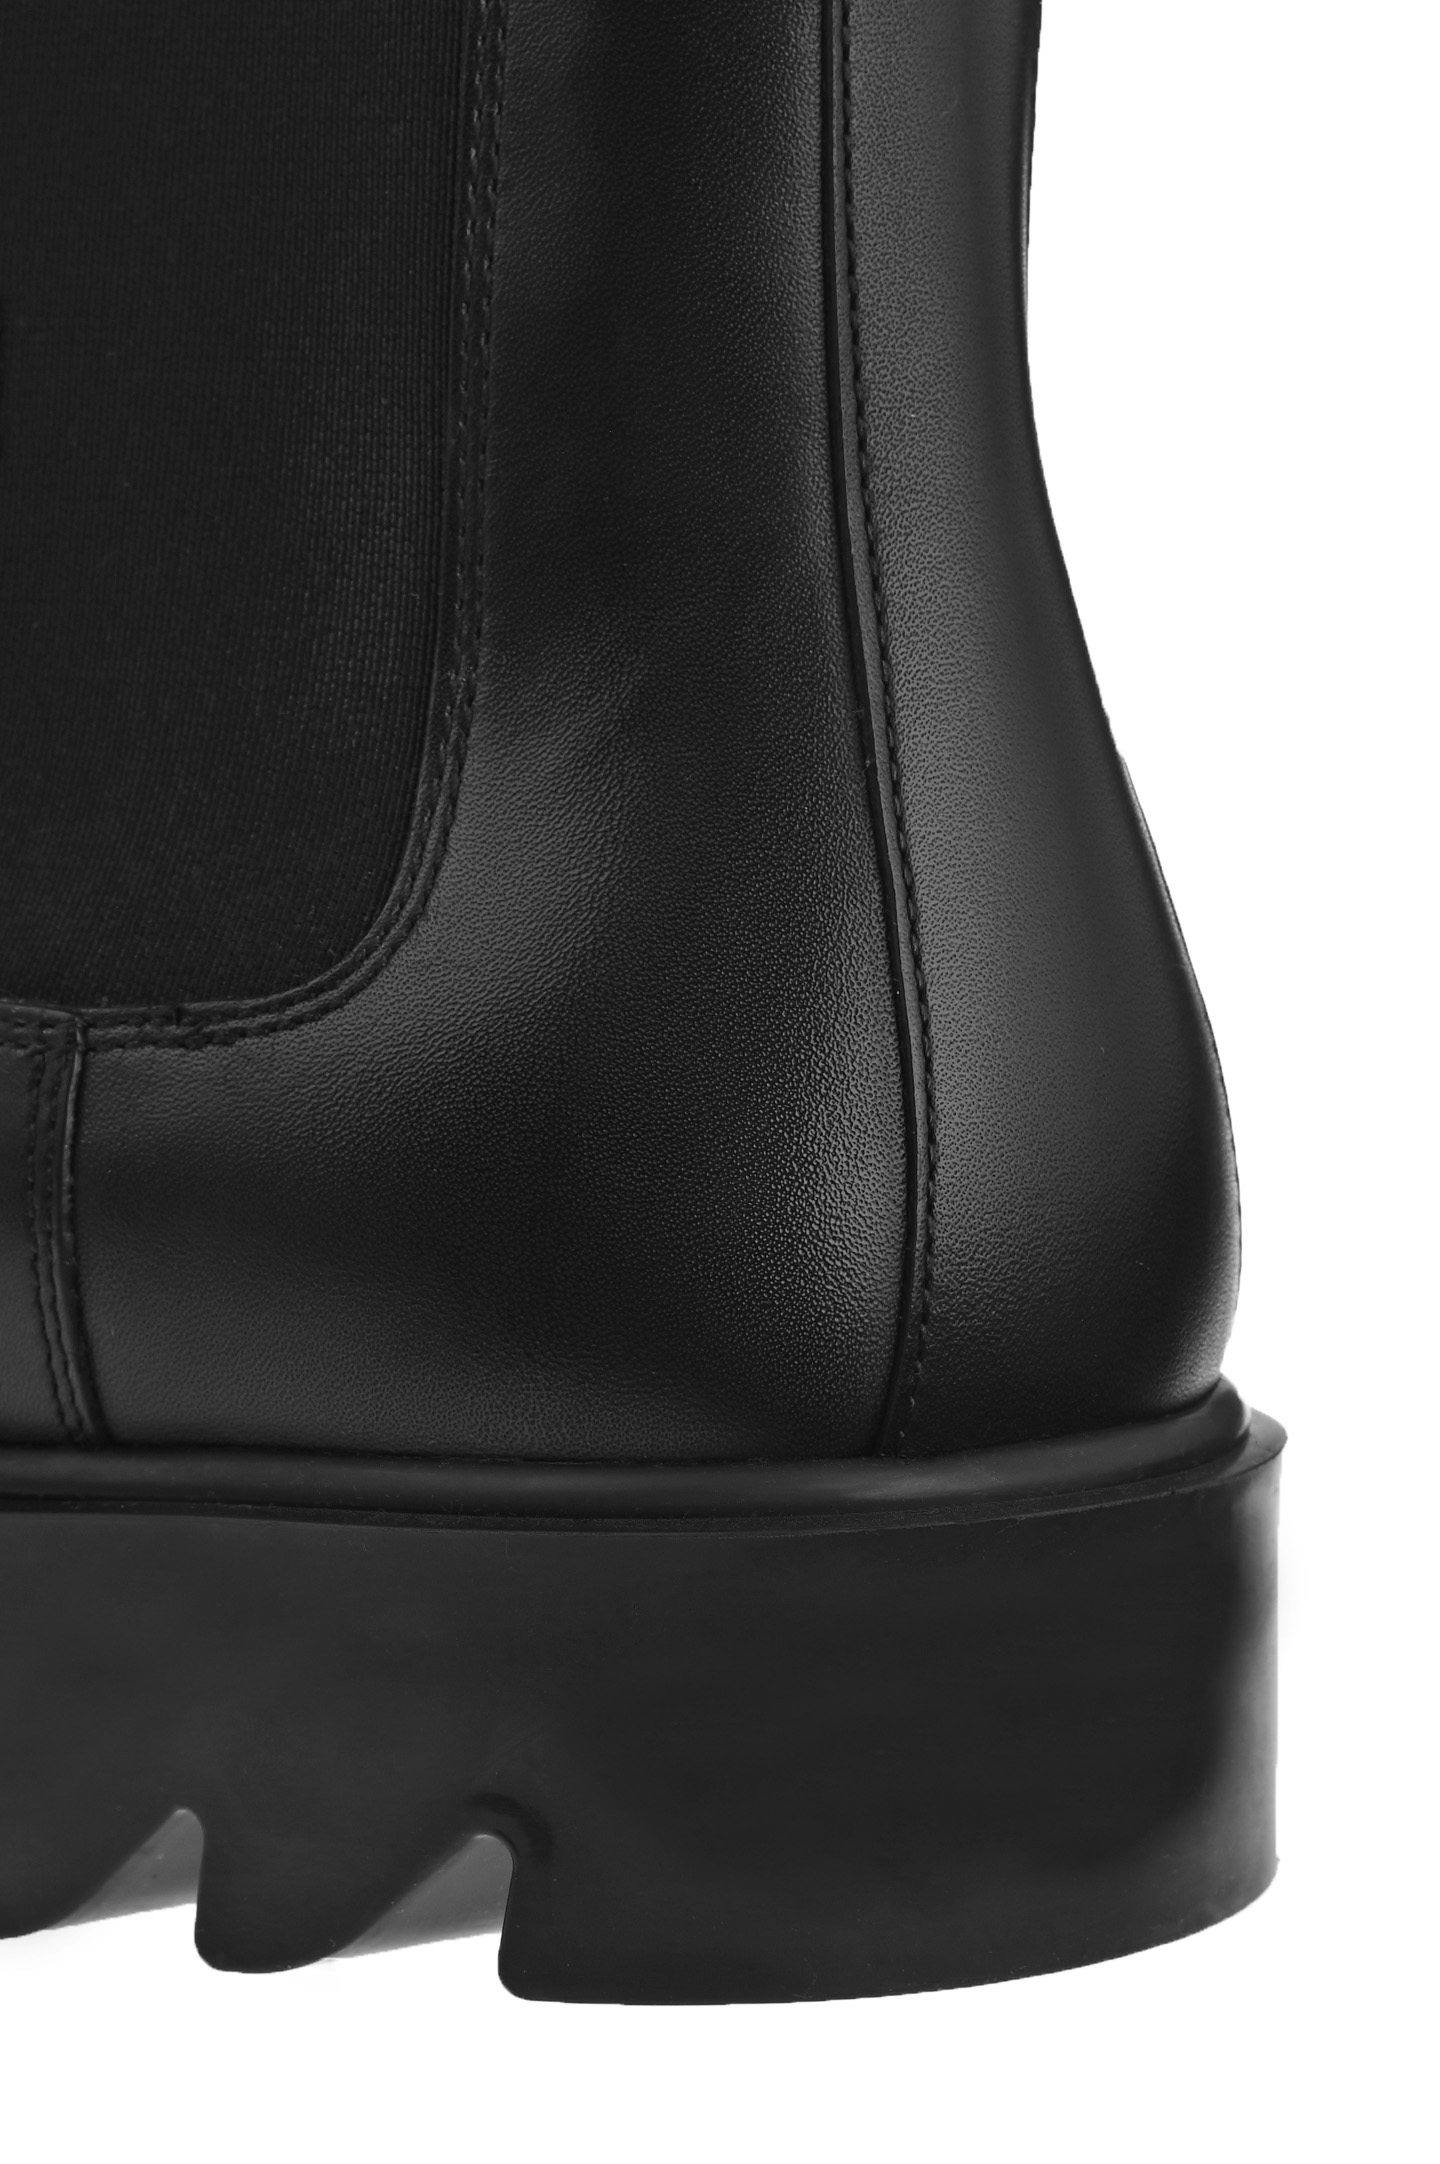 Ботинки BOTTEGA VENETA 679488 V1AO0, цвет: Черный, Женский